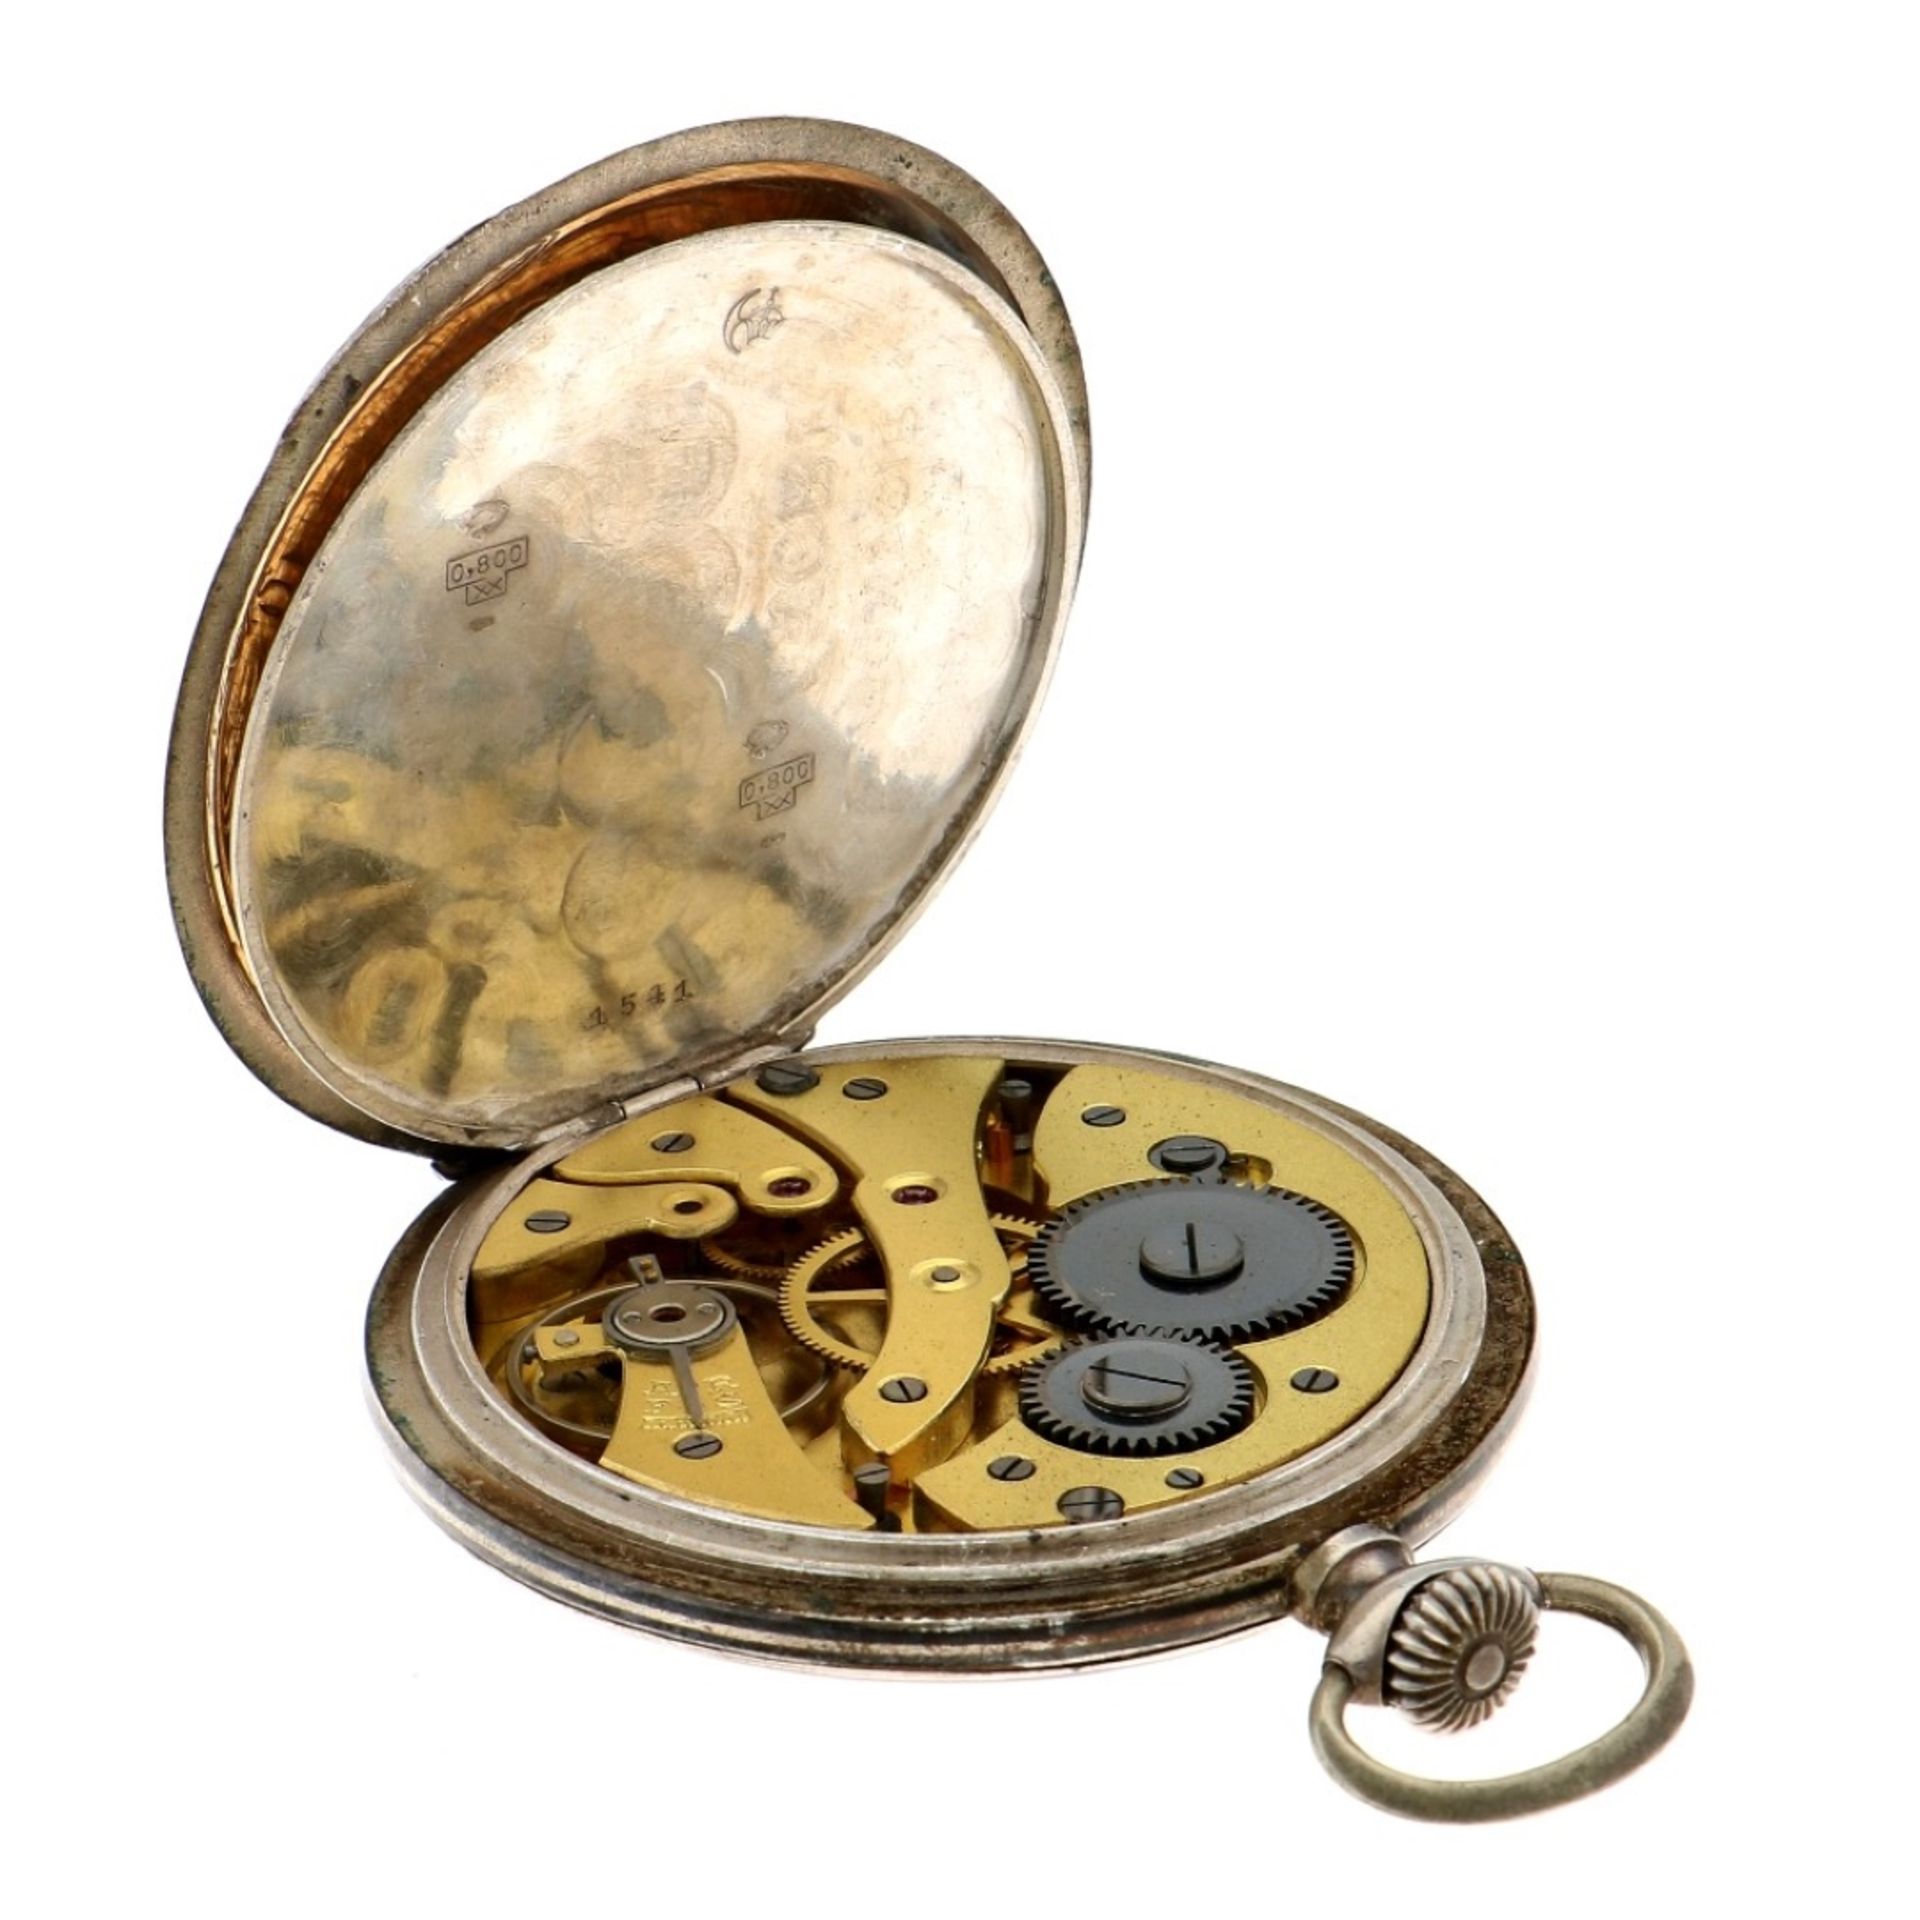 No Reserve - Zena Chronomètre Lever-Escapement silver 800/1000 - Men's pocketwatch. - Bild 5 aus 5